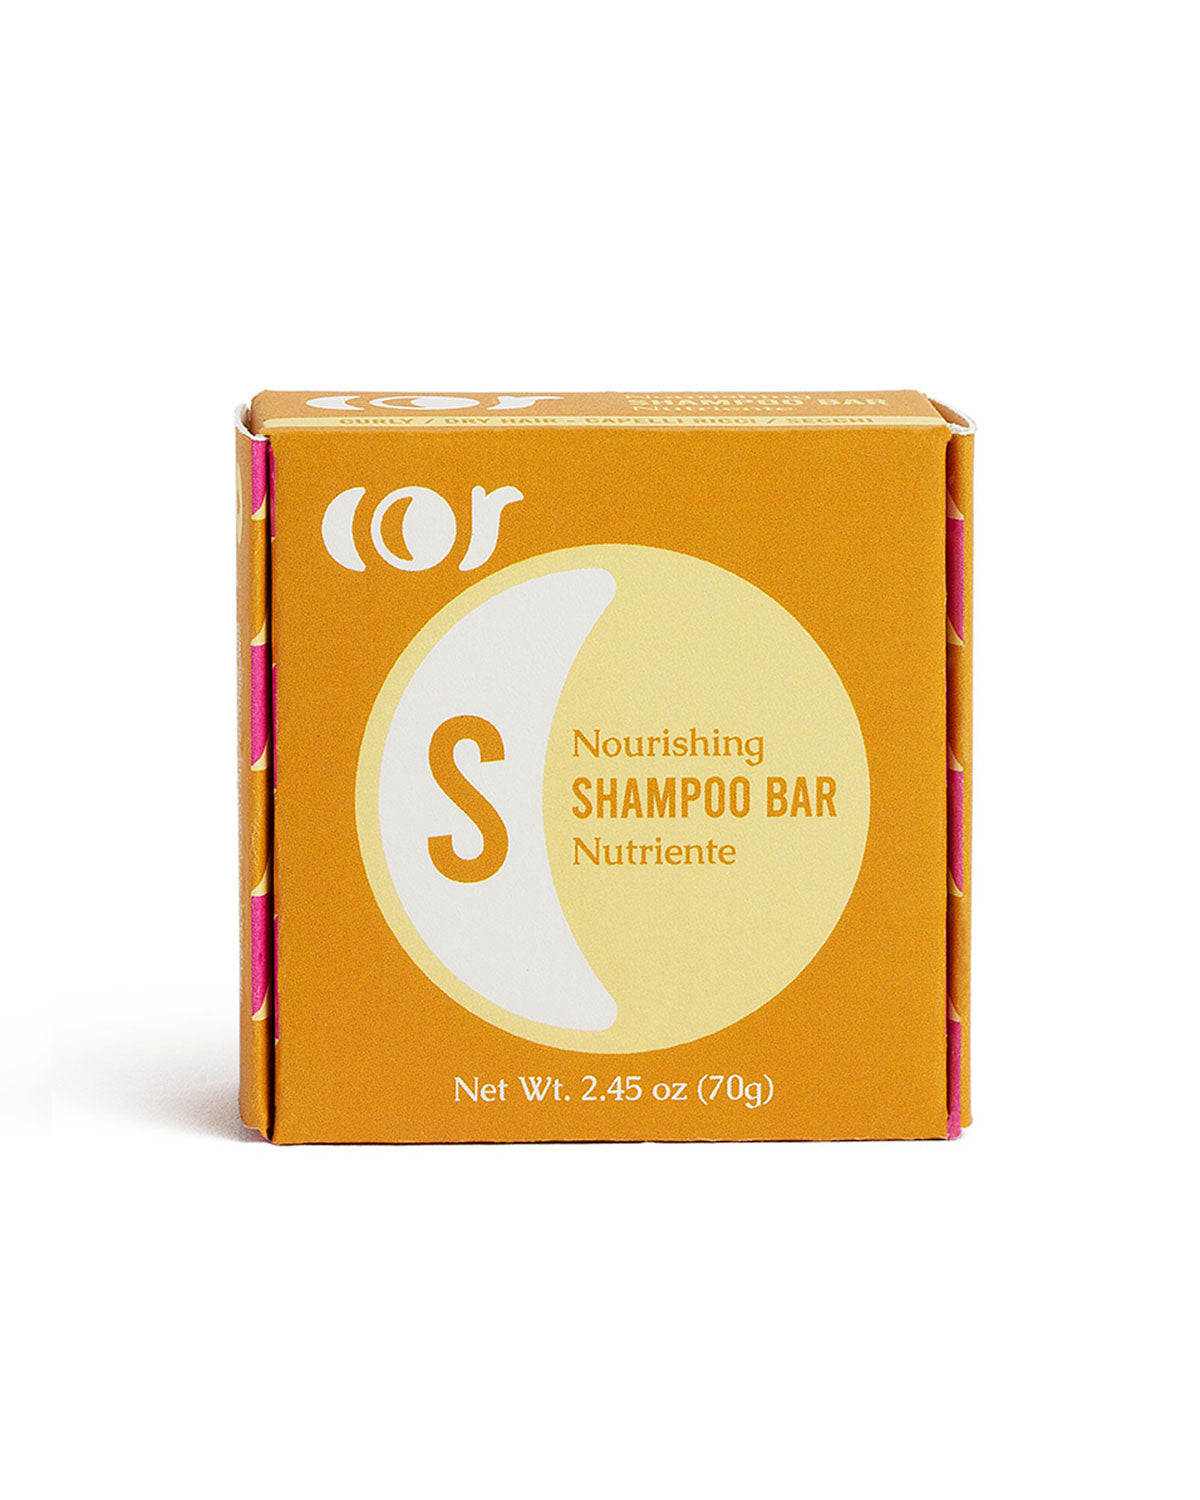 Shampoo Bar Nutriente - Capelli ricci e secchi